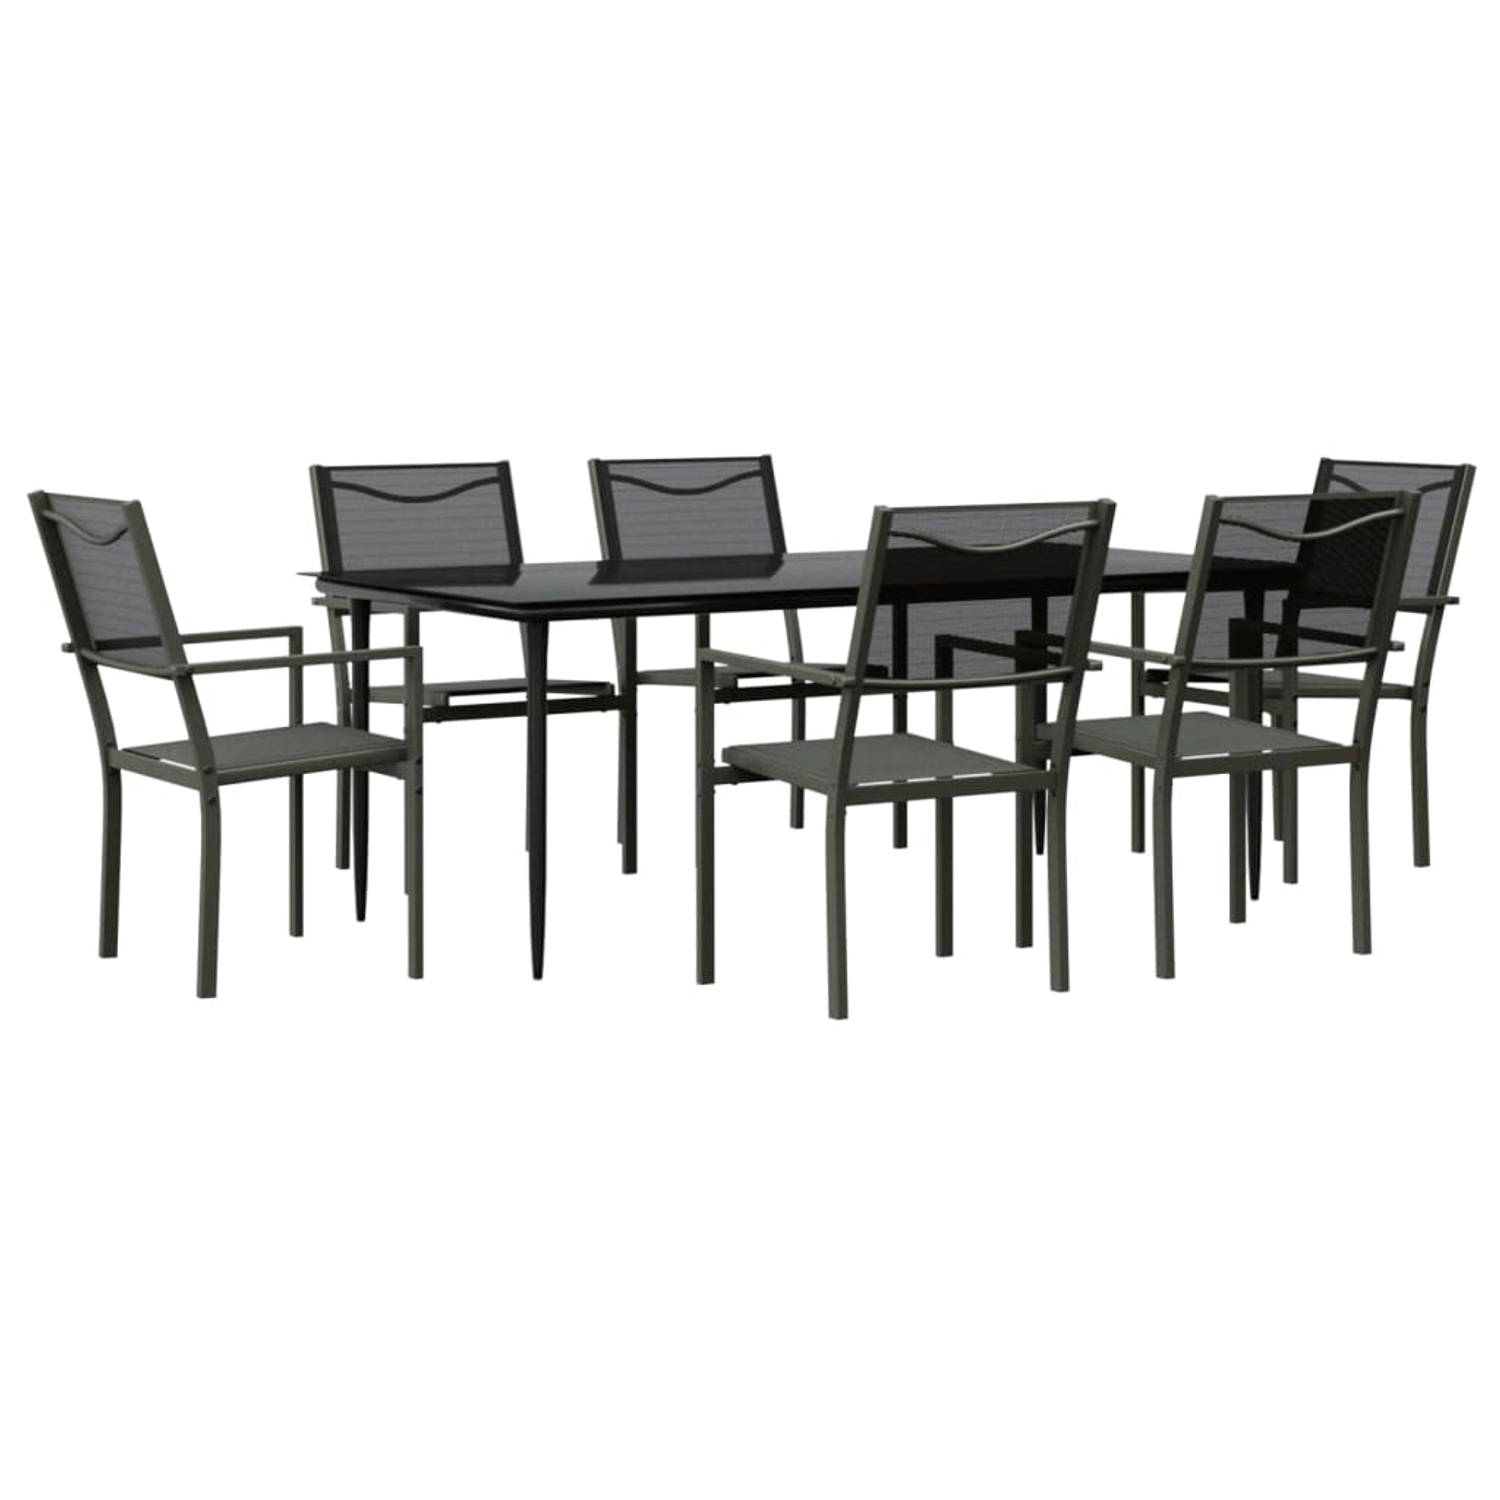 The Living Store Tuinset - 200x100x74 cm - Stabiel frame - Duurzaam materiaal - Stevig tafelblad - Comfortabele zitervaring - Inclusief 1 tafel en 6 stoelen - Zwart/antraciet - Afm